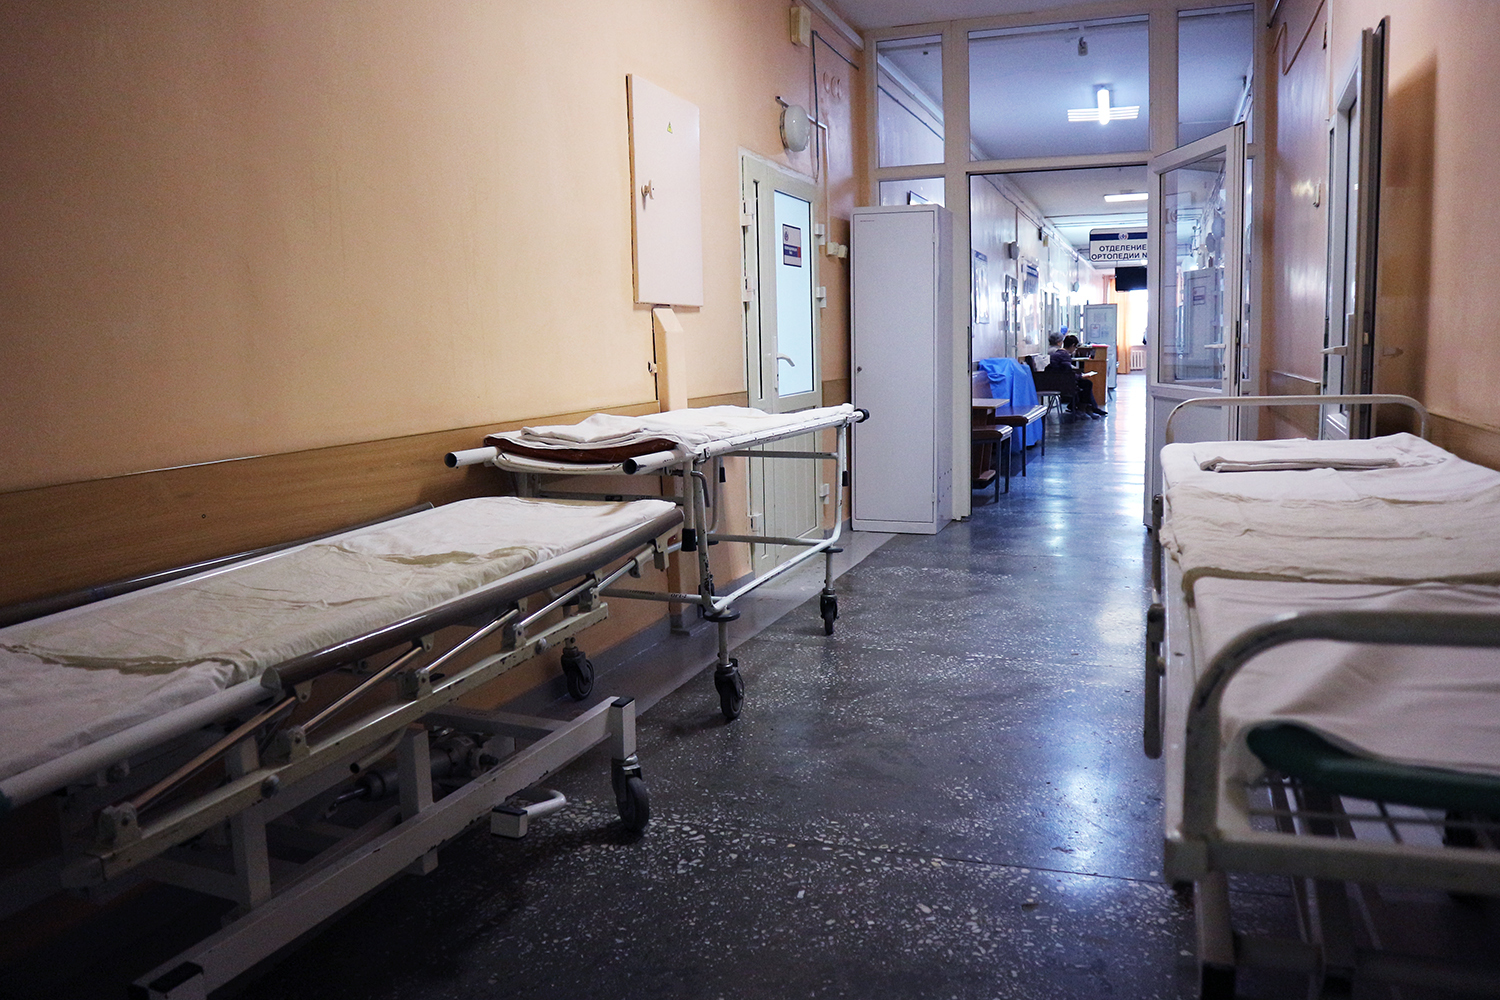 Омский СКР возбудил дело и изымает документацию из больницы после смерти пациента